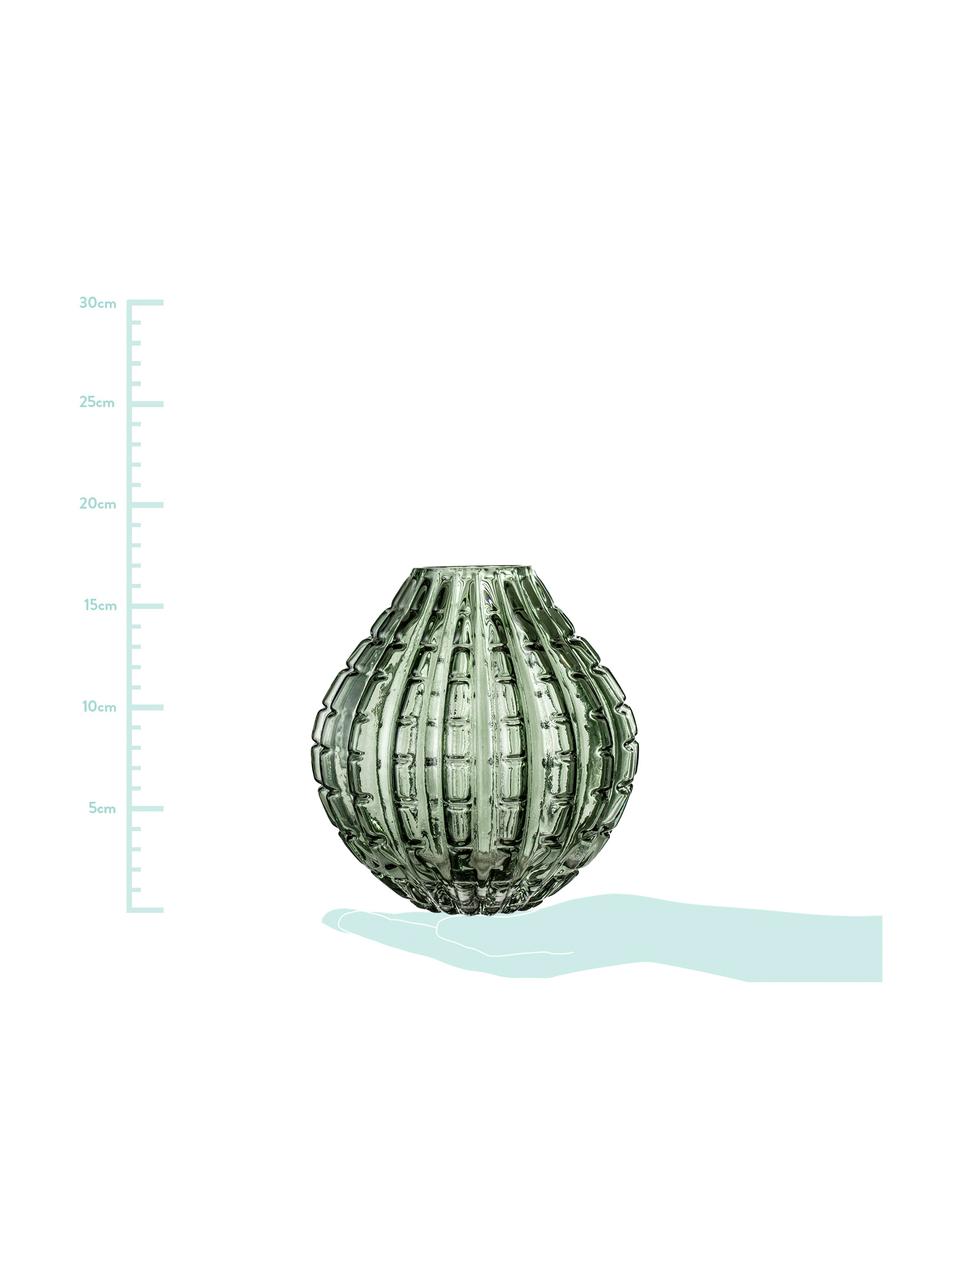 Skleněná váza Lioba, Sklo, Zelená, Ø 15 cm, V 17 cm